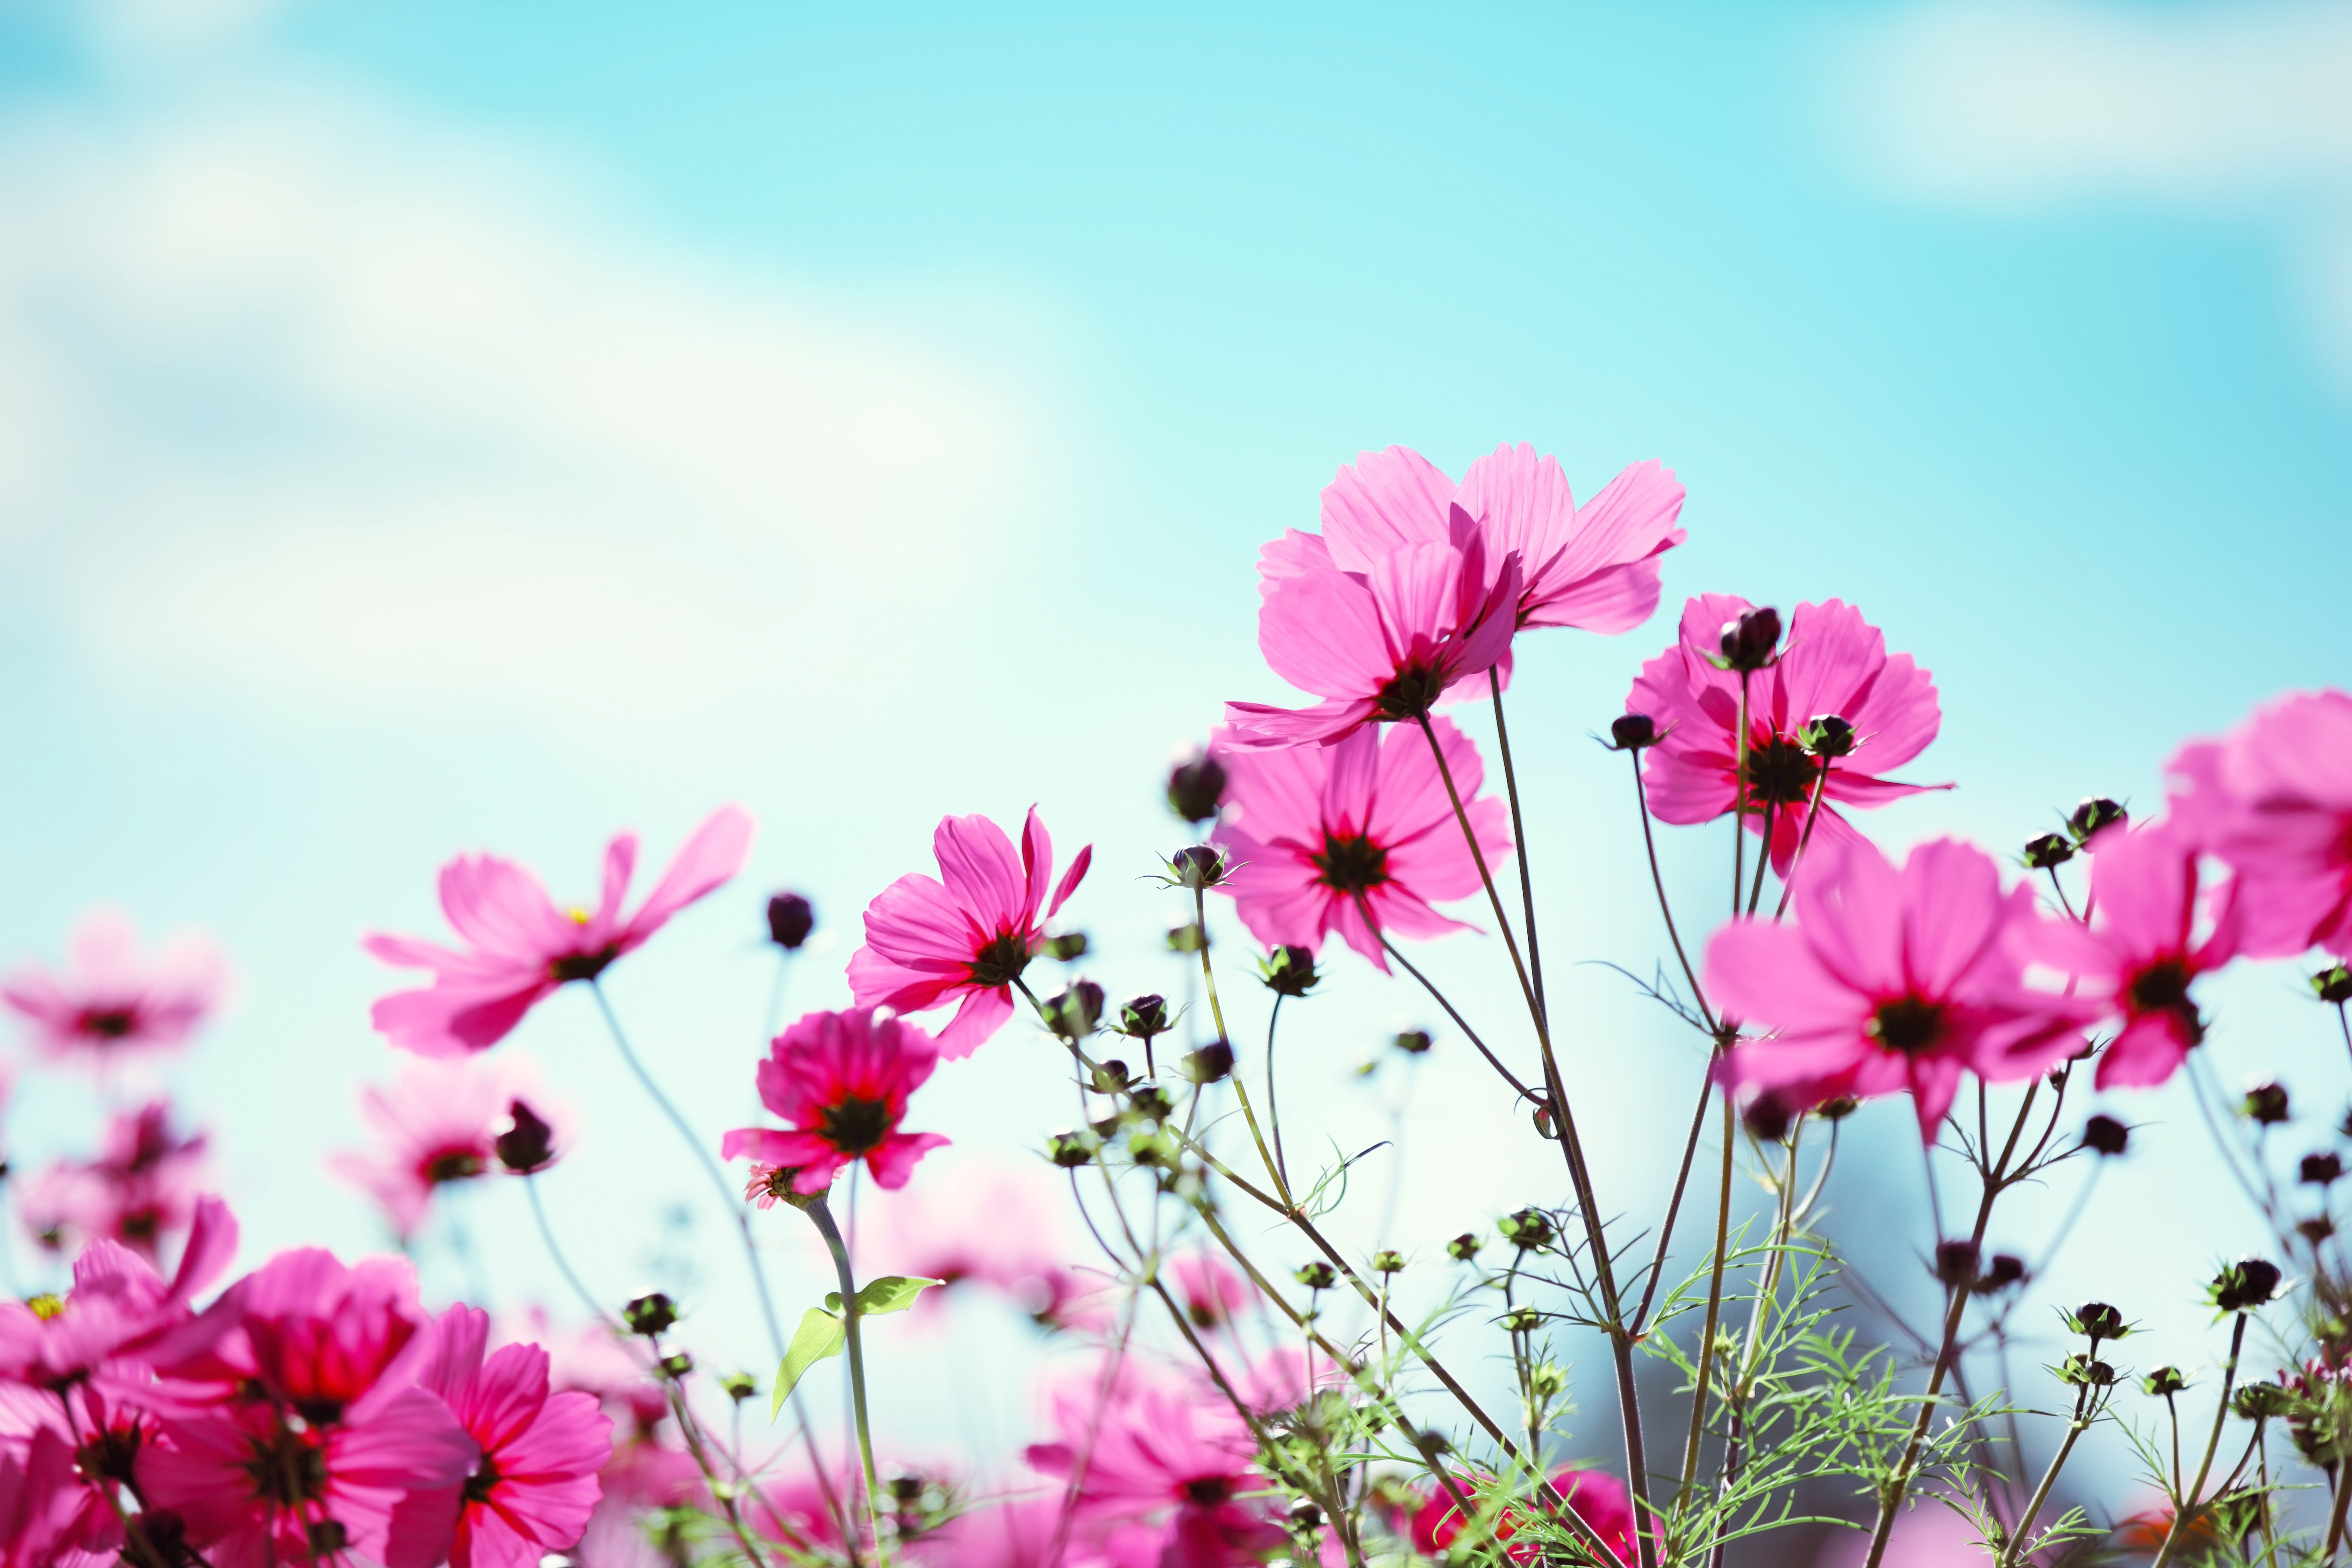  Blumenwiese Hintergrundbild 7200x4800. Du liegst in einer schönen Blumenwiese inmitten bunter Blumen und du siehst den Wolken beim Vorbeiziehen zu